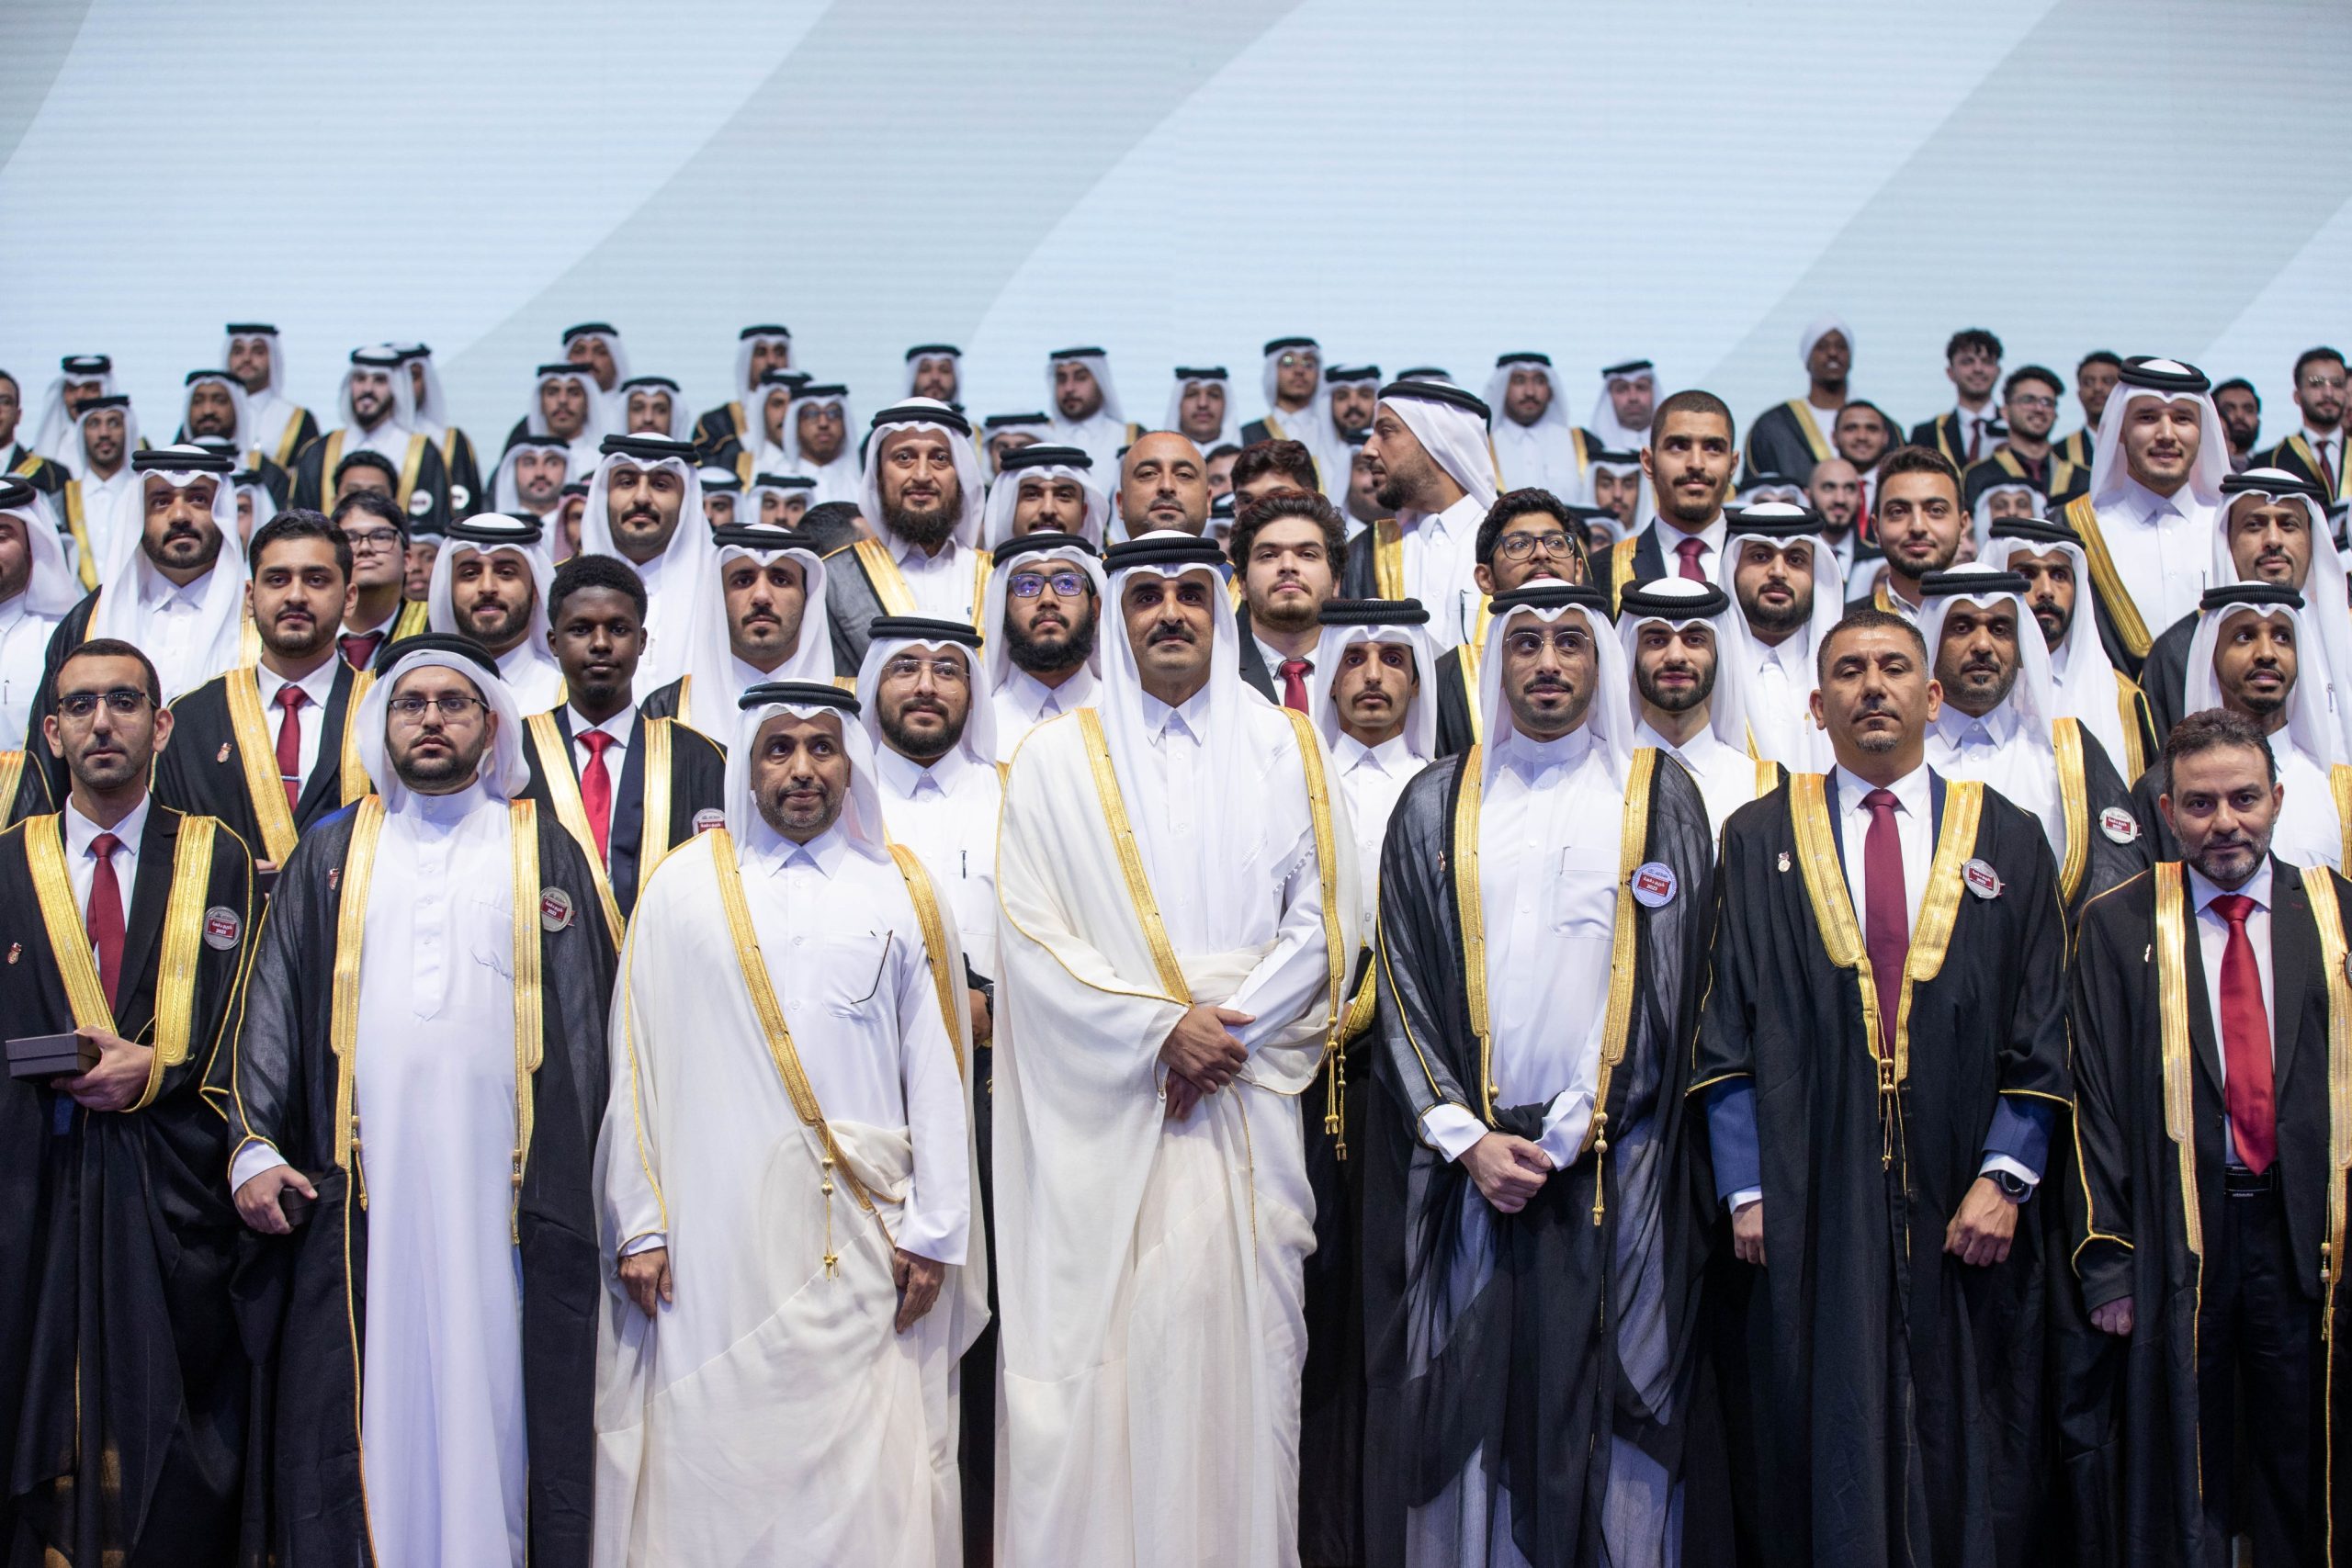 Hommage à plus de 100 diplômés distingués de l’Université du Qatar par le prince Tamim – Doha News